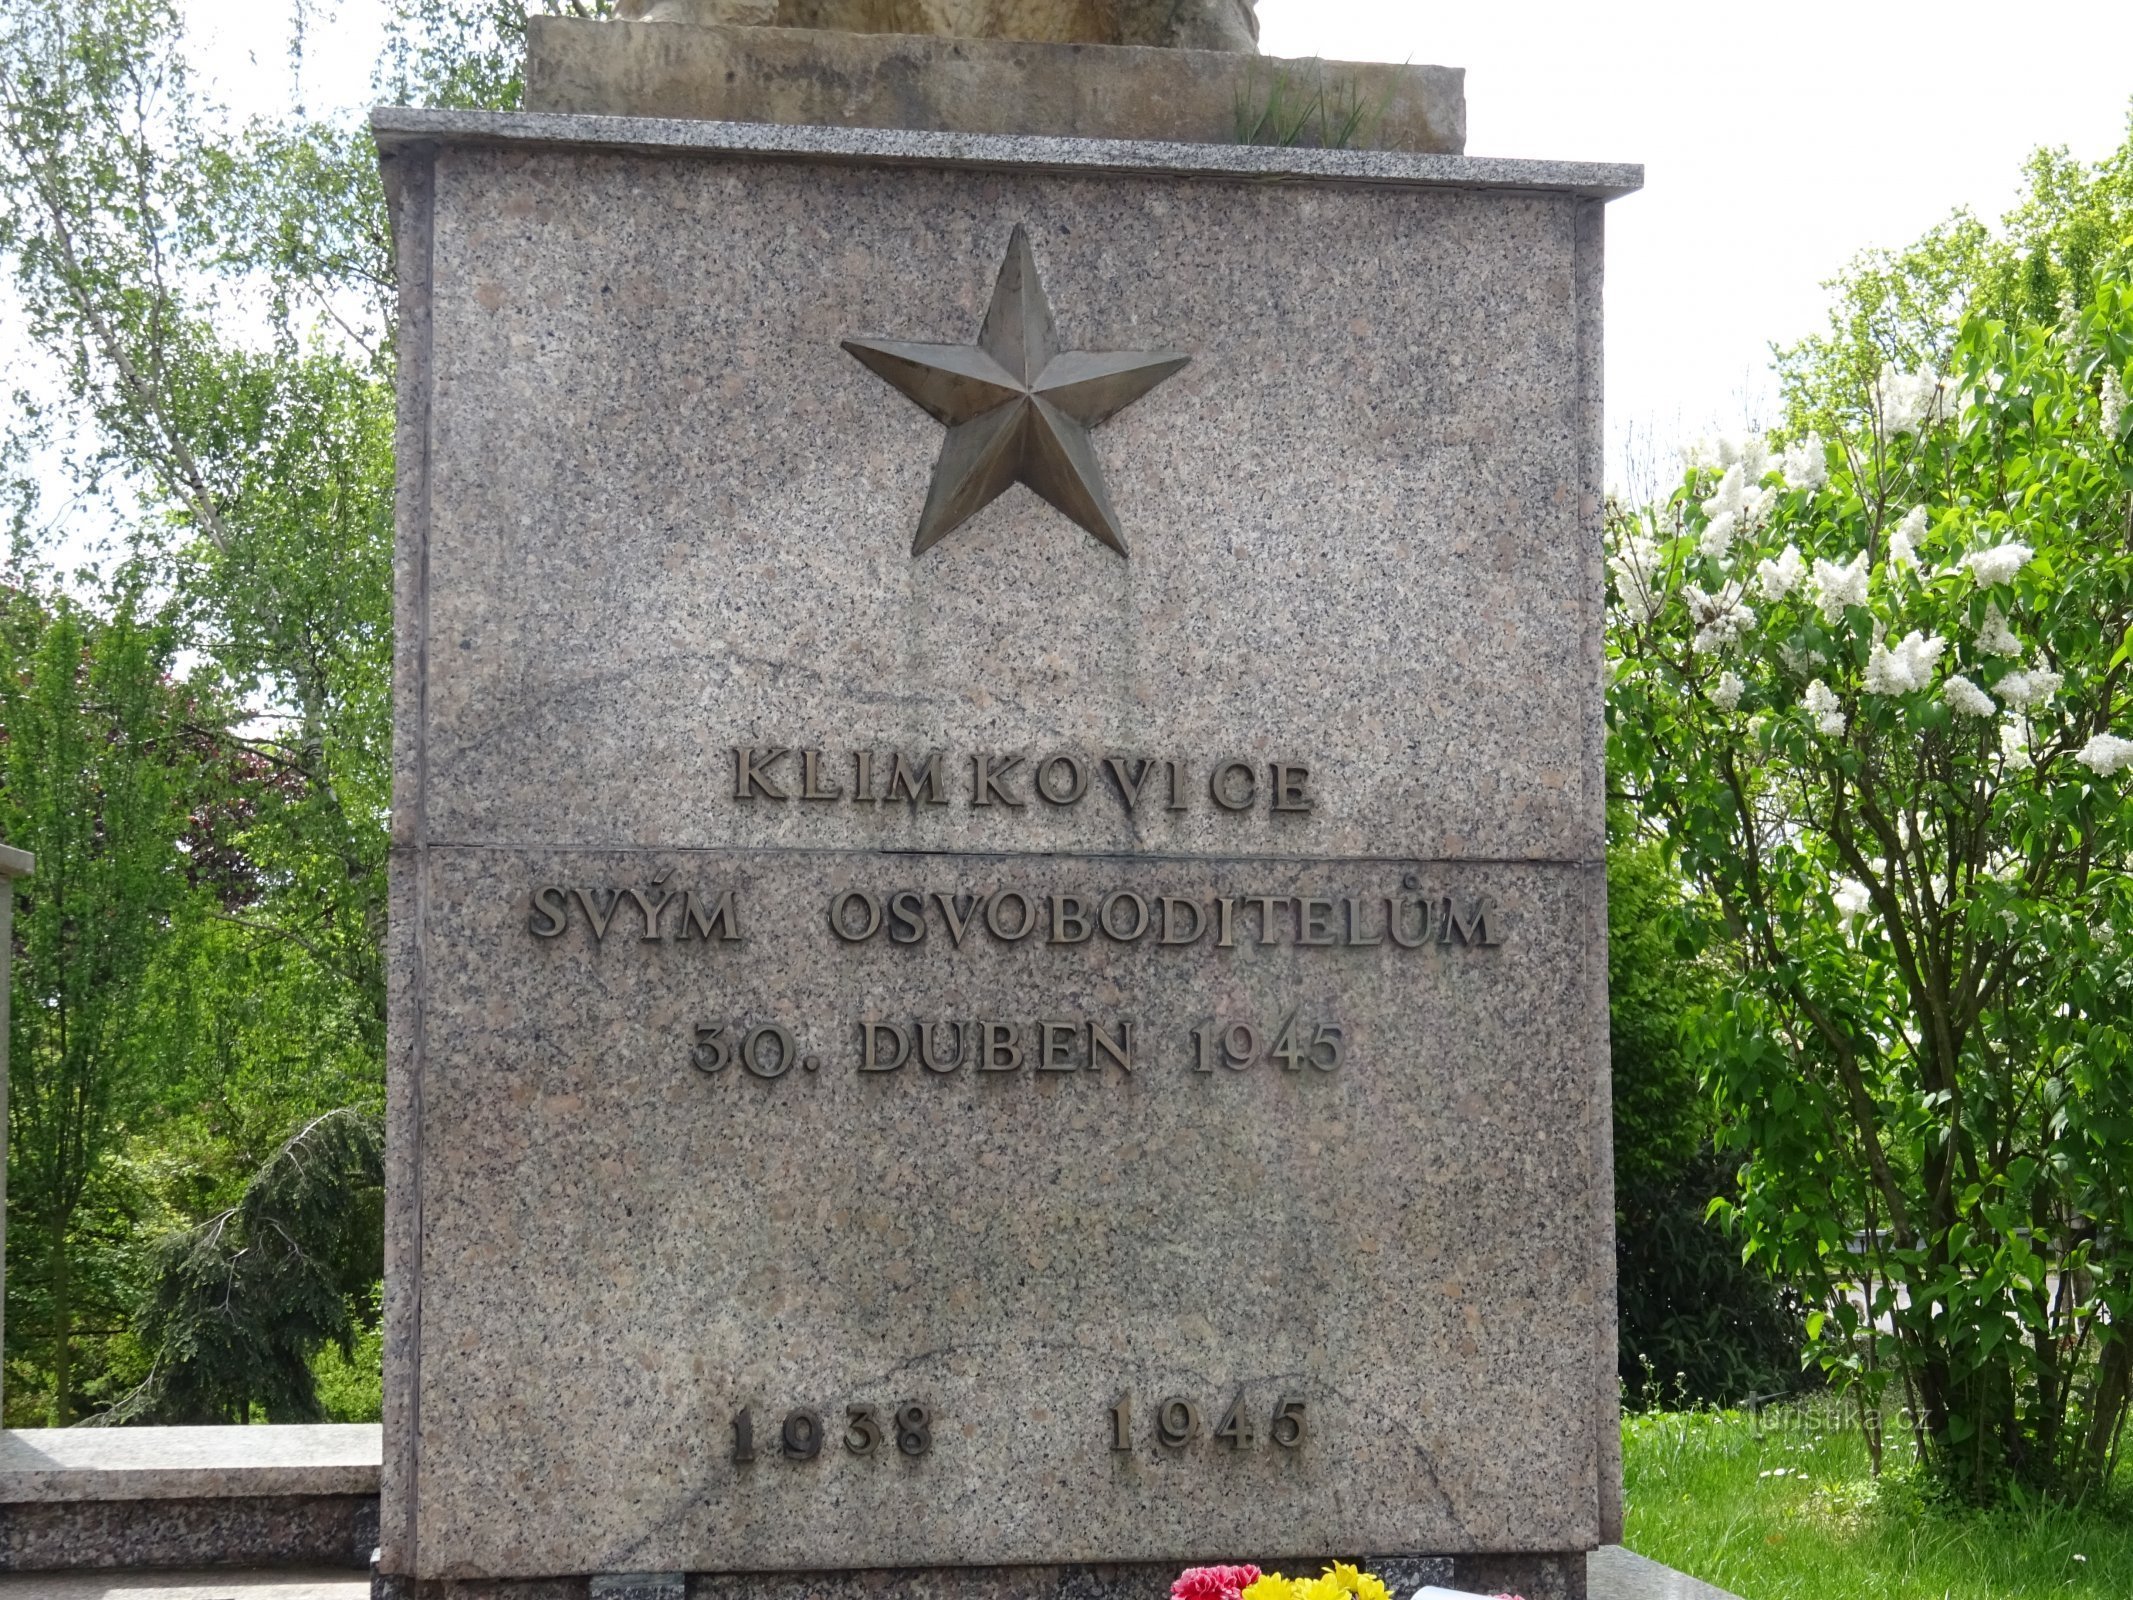 Климковіце - пам'ятник II. світові війни